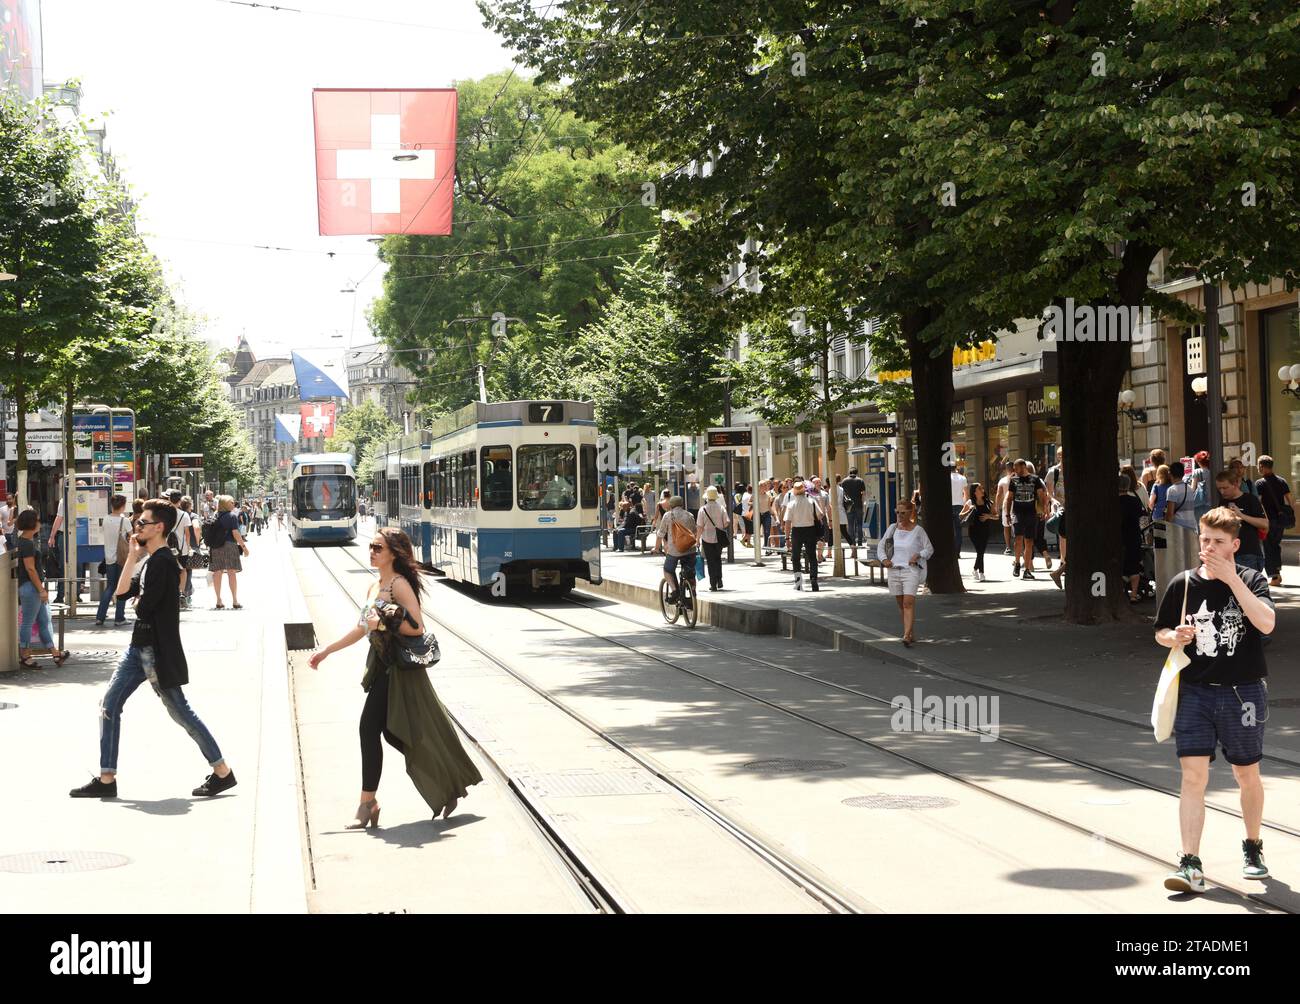 Zurich, Switzerland - June 03, 2017: People on the street in Zurich. Daily life in Zurich. Stock Photo